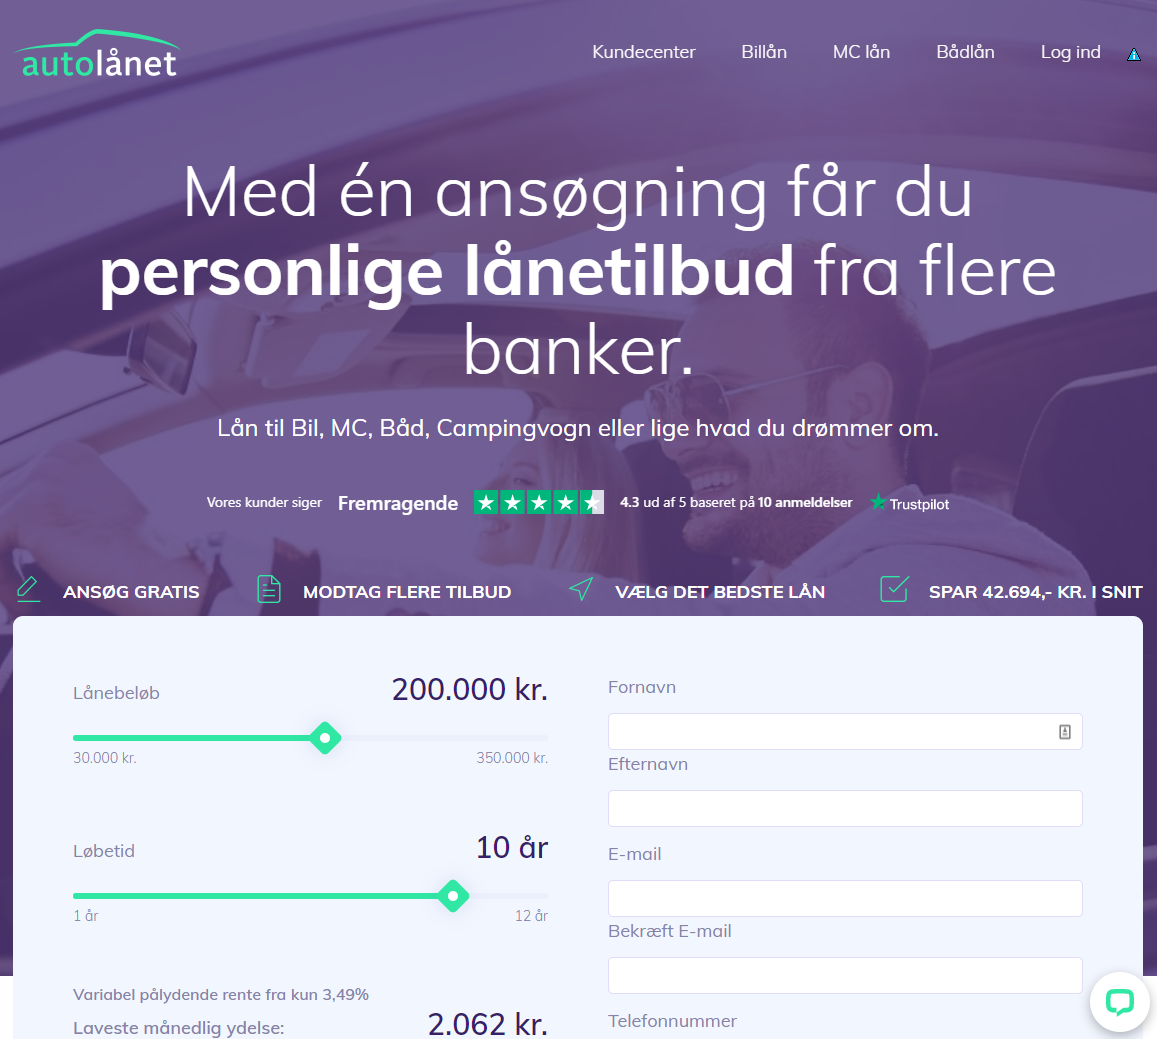 Bilfinansiering - Autolånet.dk